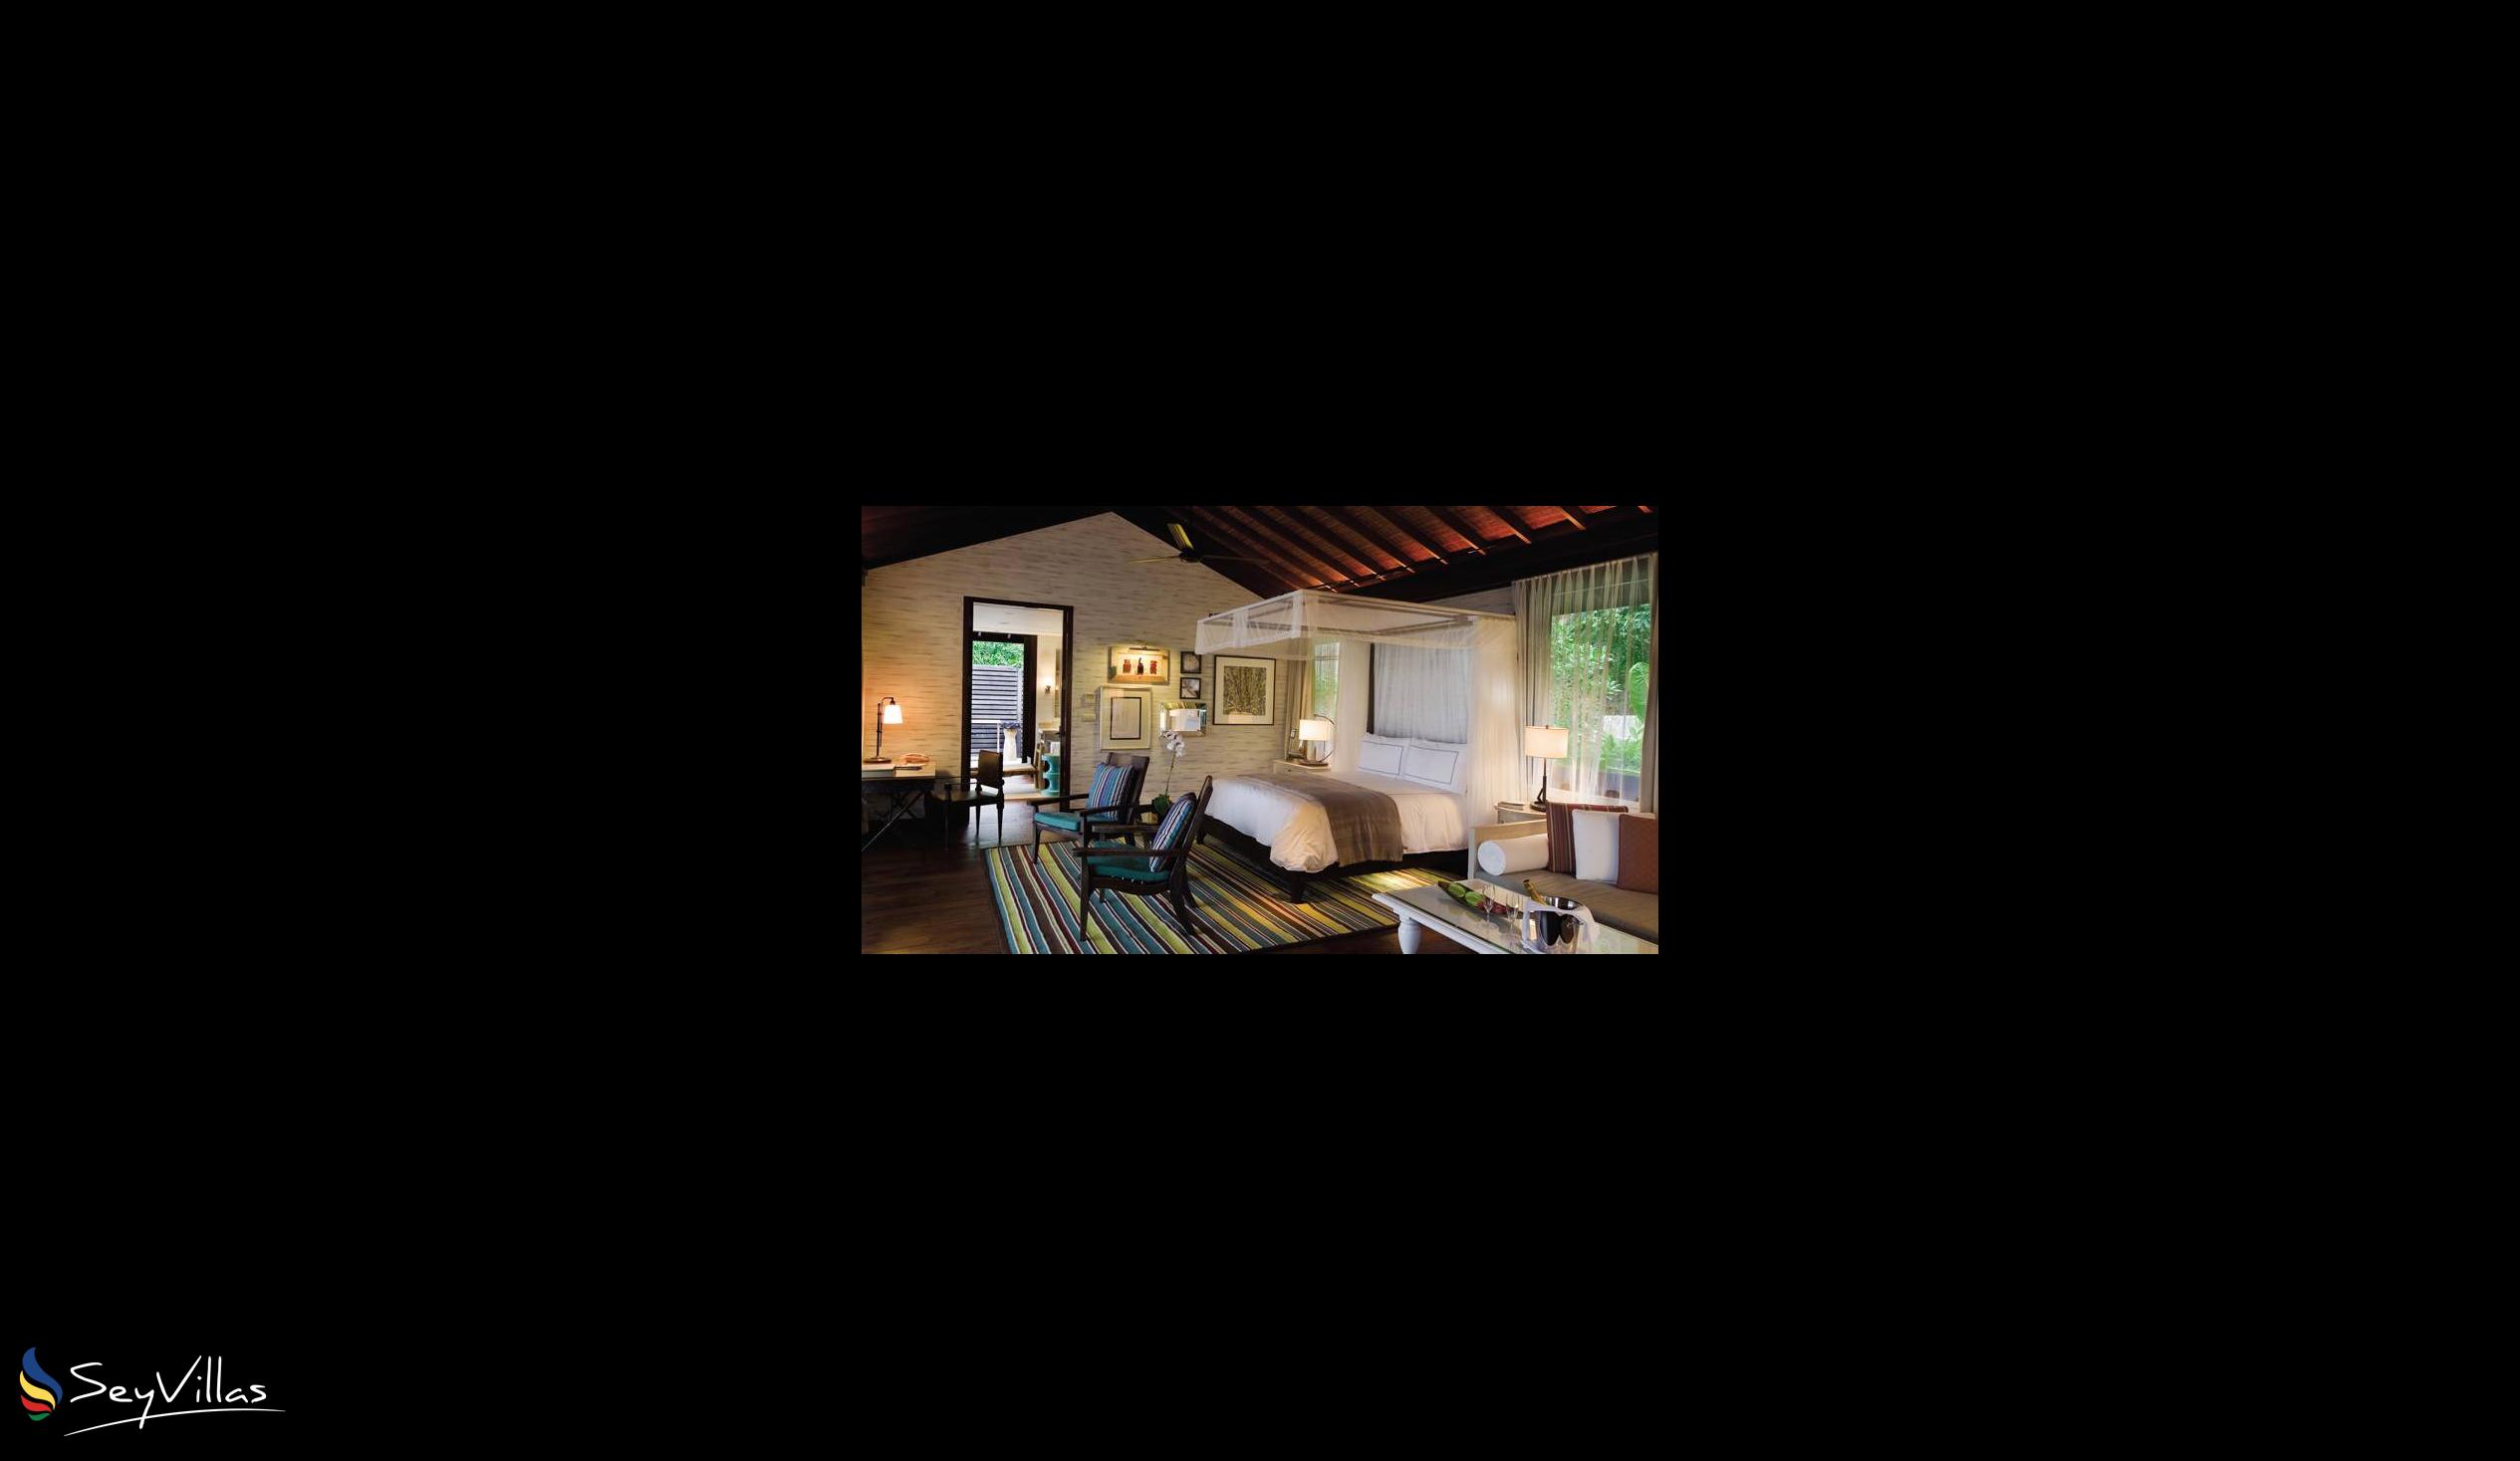 Foto 45: Four Seasons Resort - 2-Bedroom Ocean View Suite - Mahé (Seychelles)